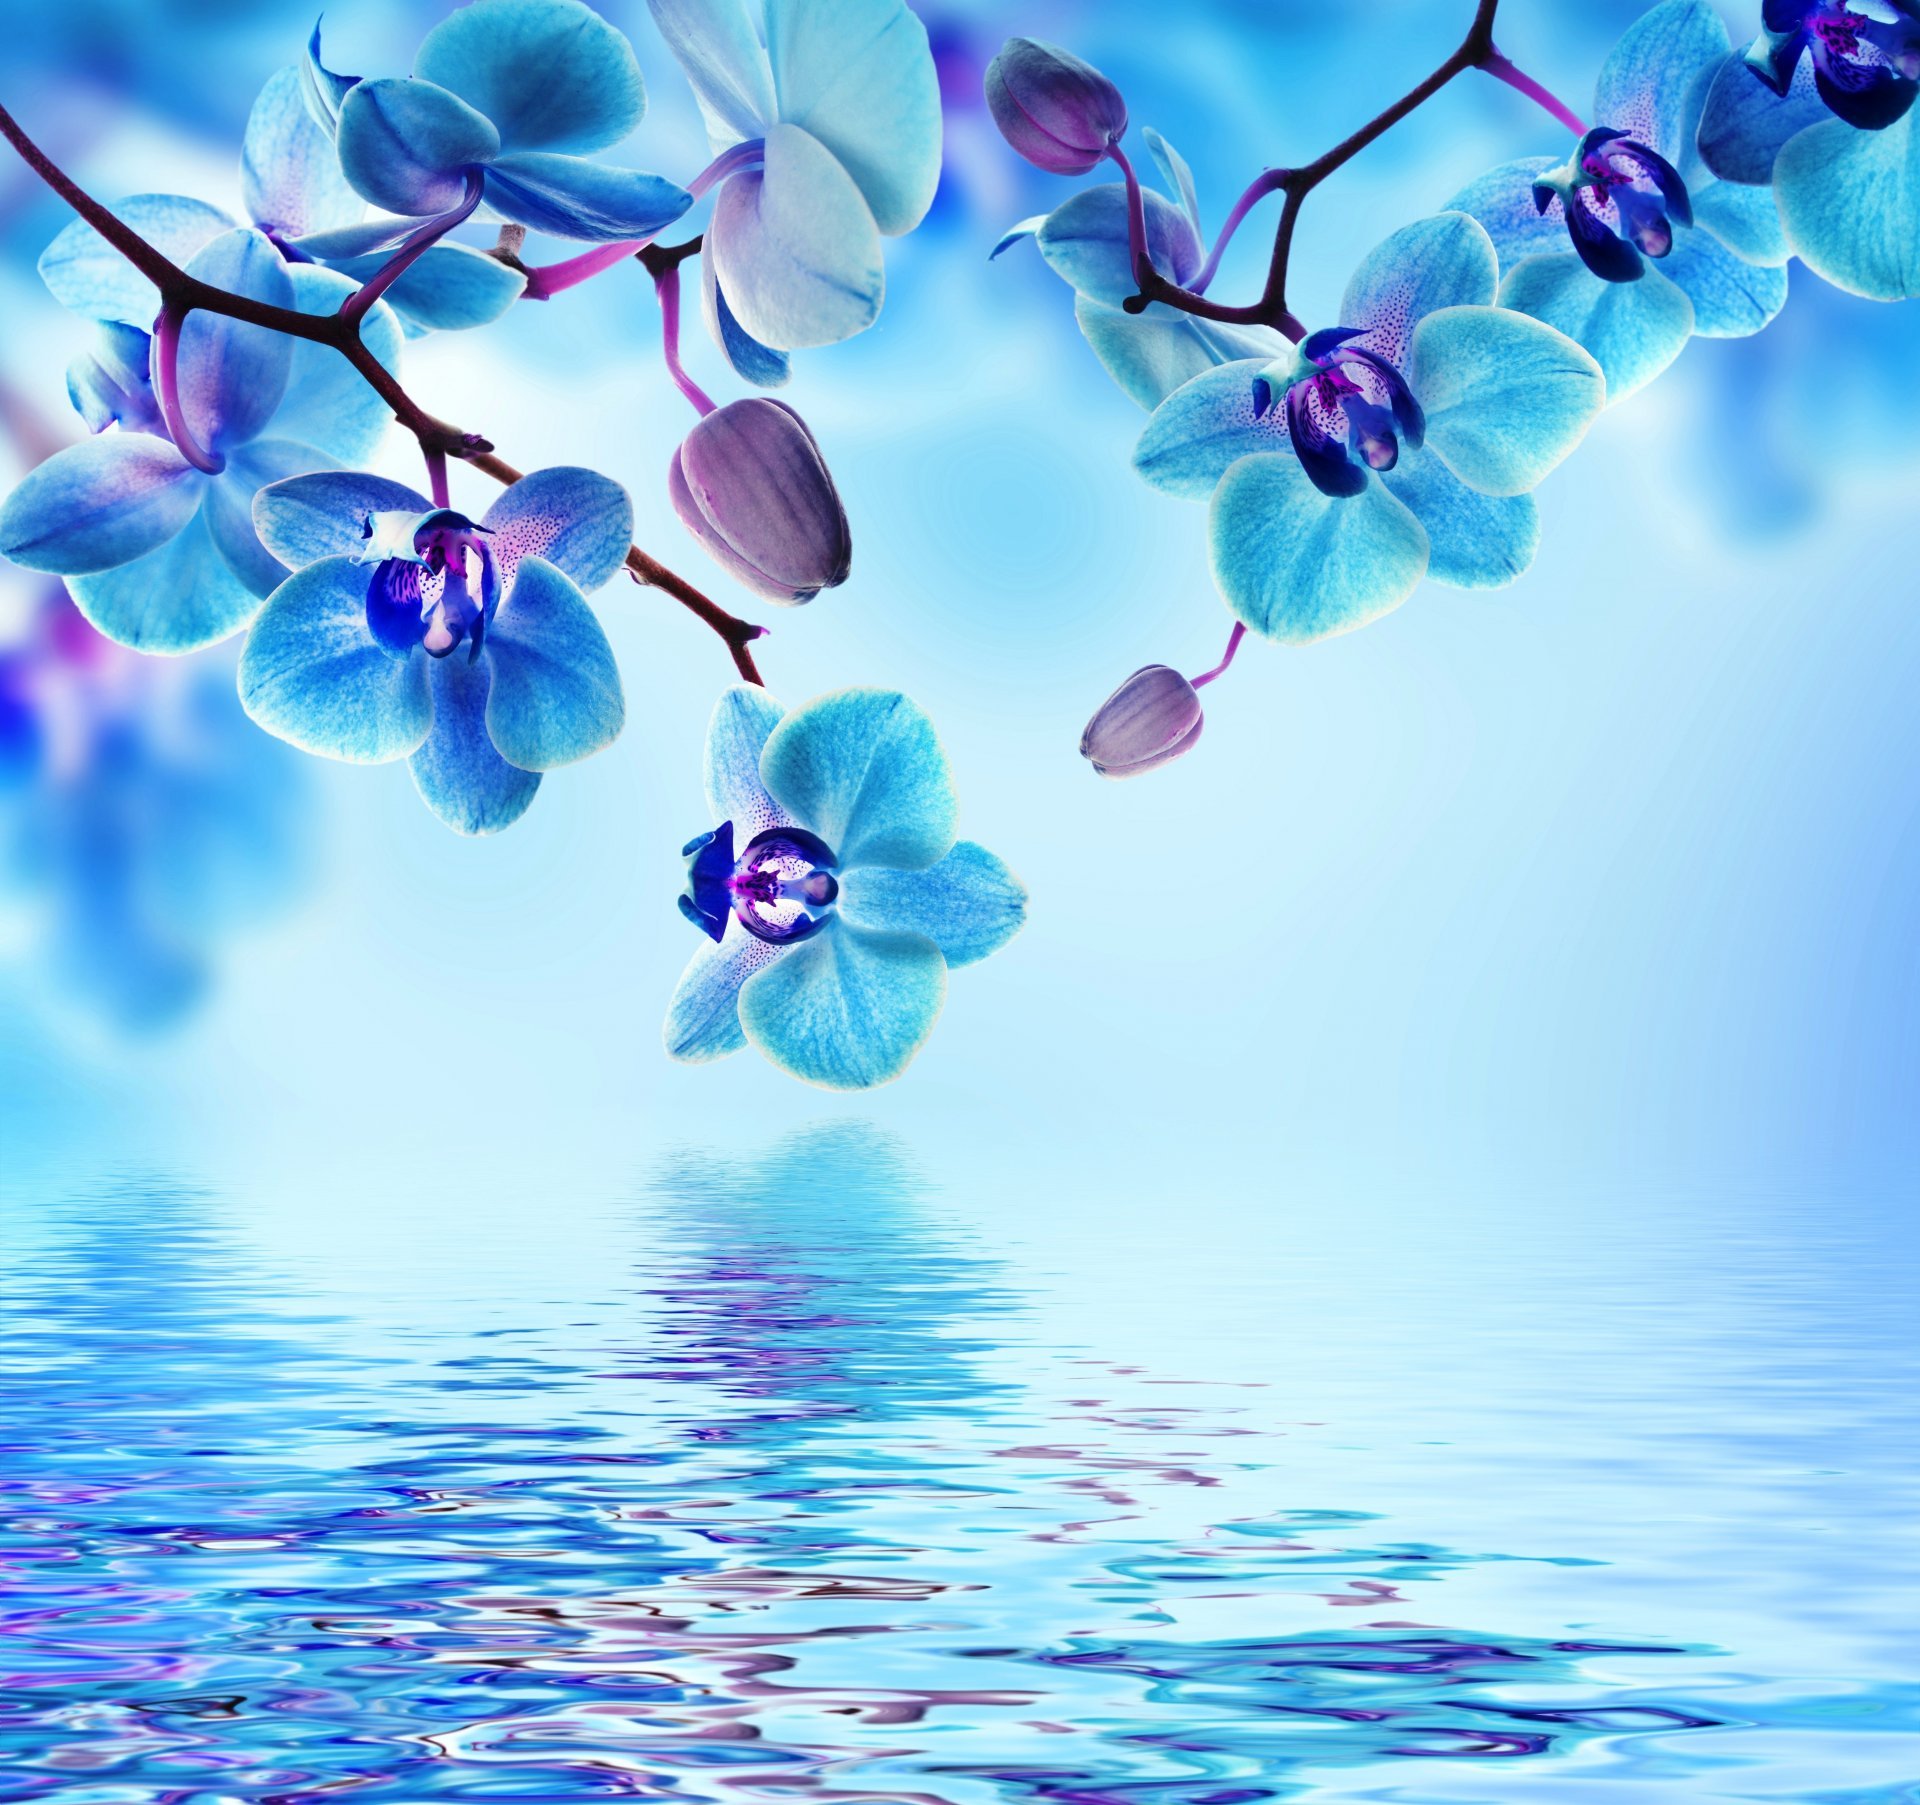 Flowers In Water Wallpaper - Beautiful Flowers In Water , HD Wallpaper & Backgrounds